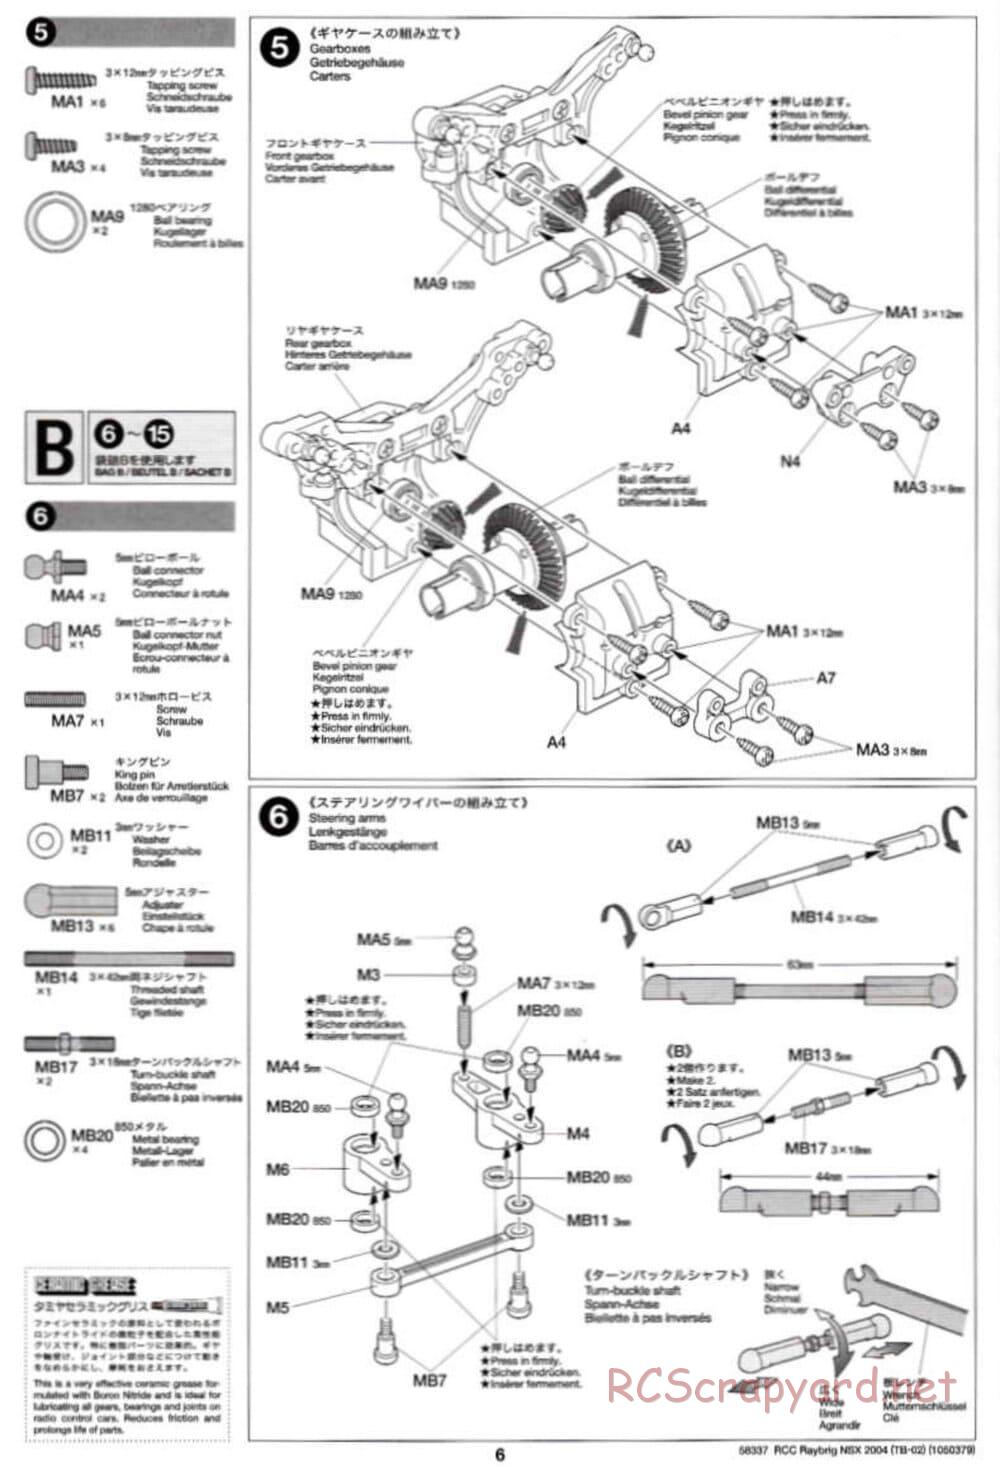 Tamiya - Raybrig NSX 2004 - TB-02 Chassis - Manual - Page 6